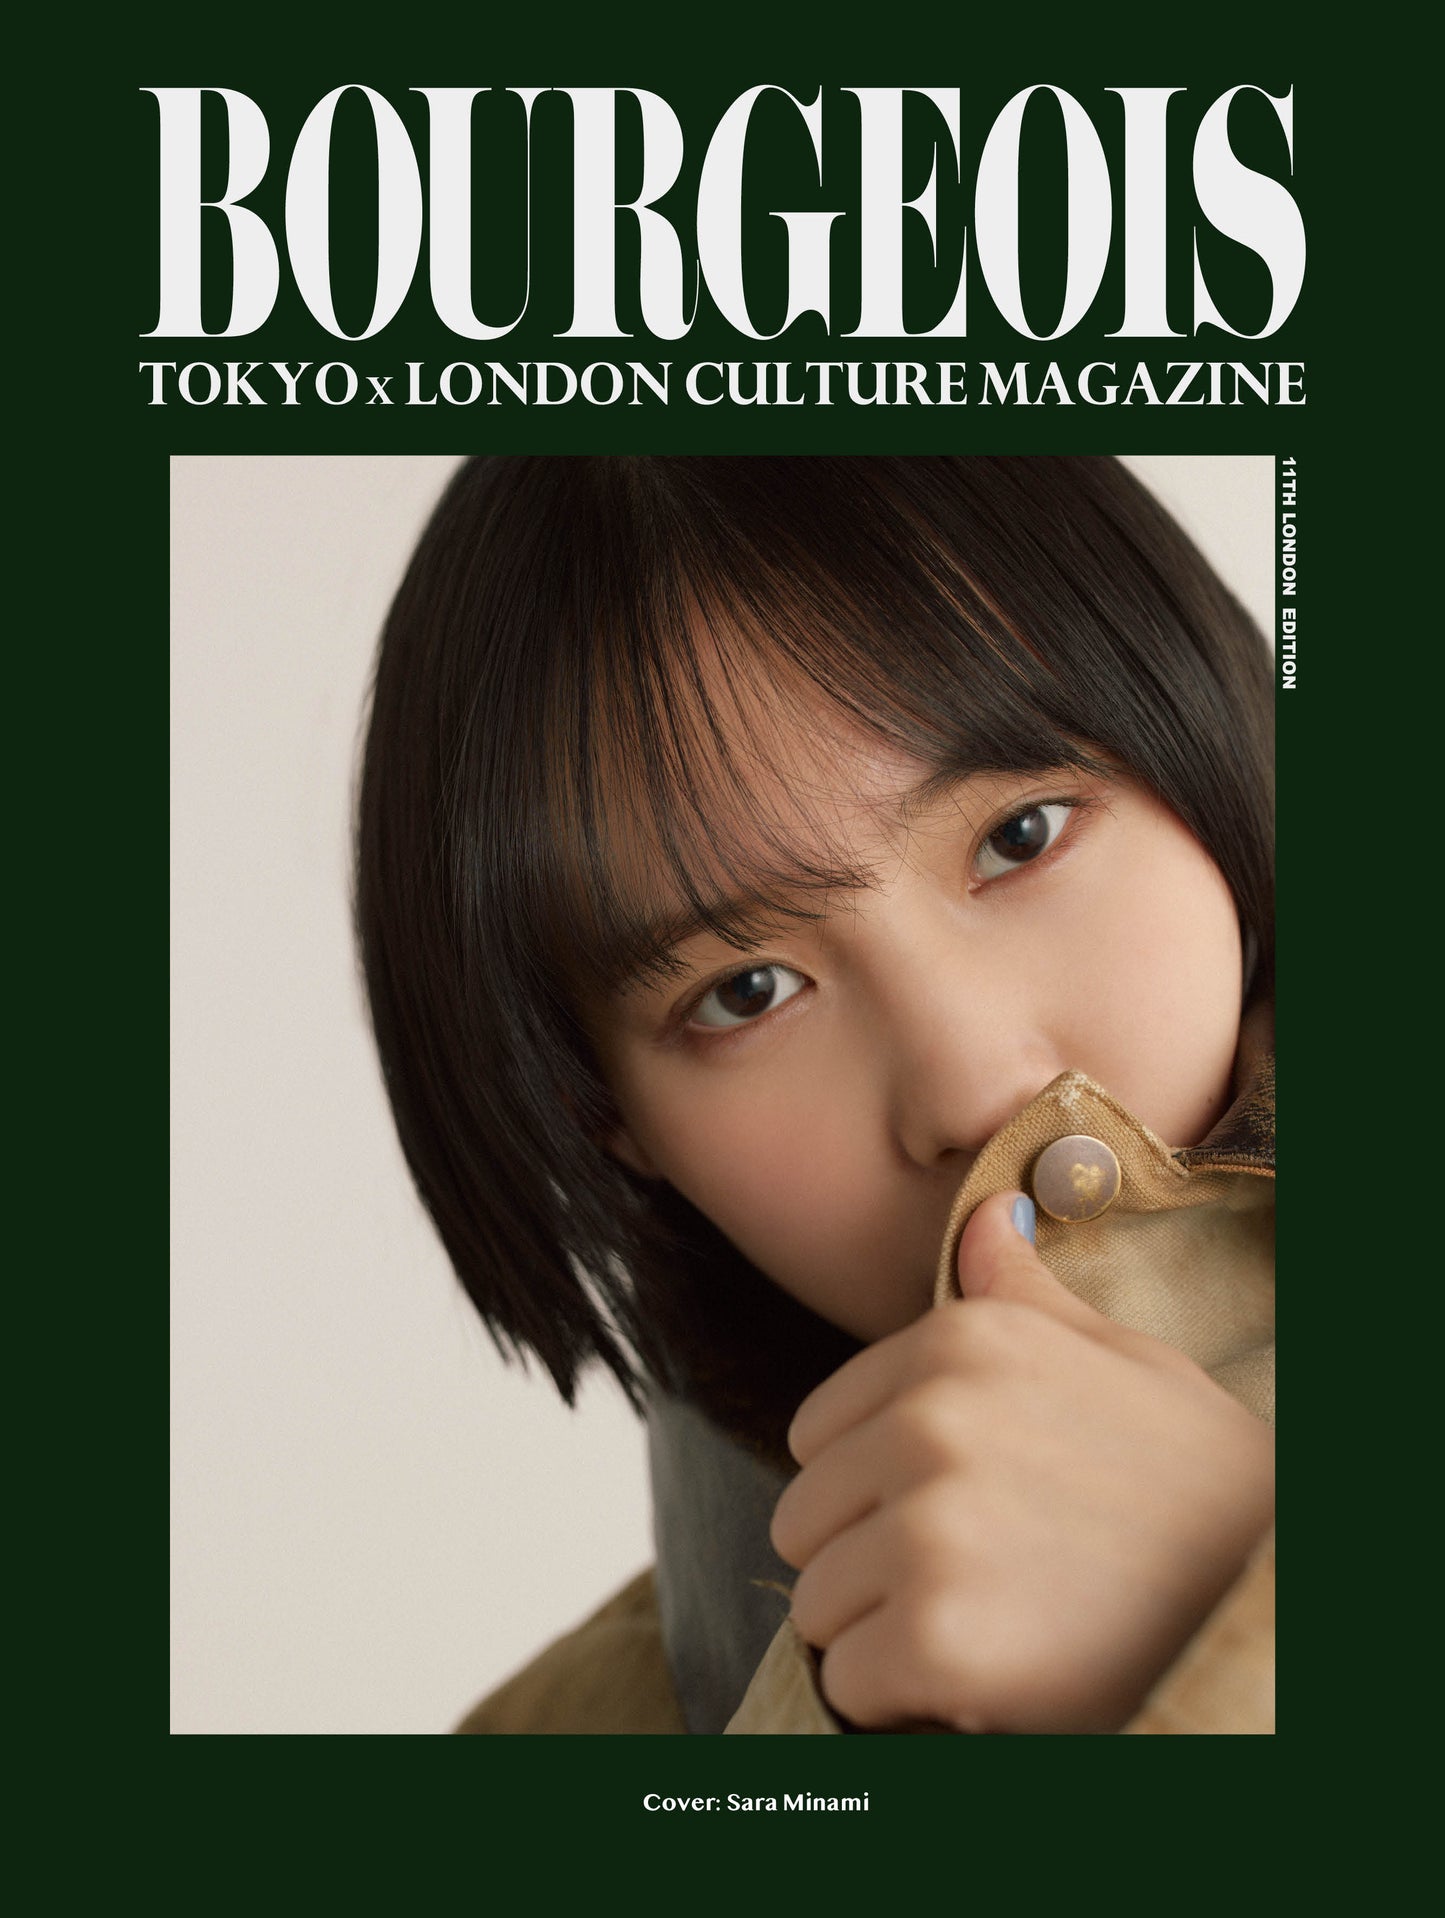 BOURGEOIS VOL.11 COVER : YU SHIROTA/SARA MINAMI